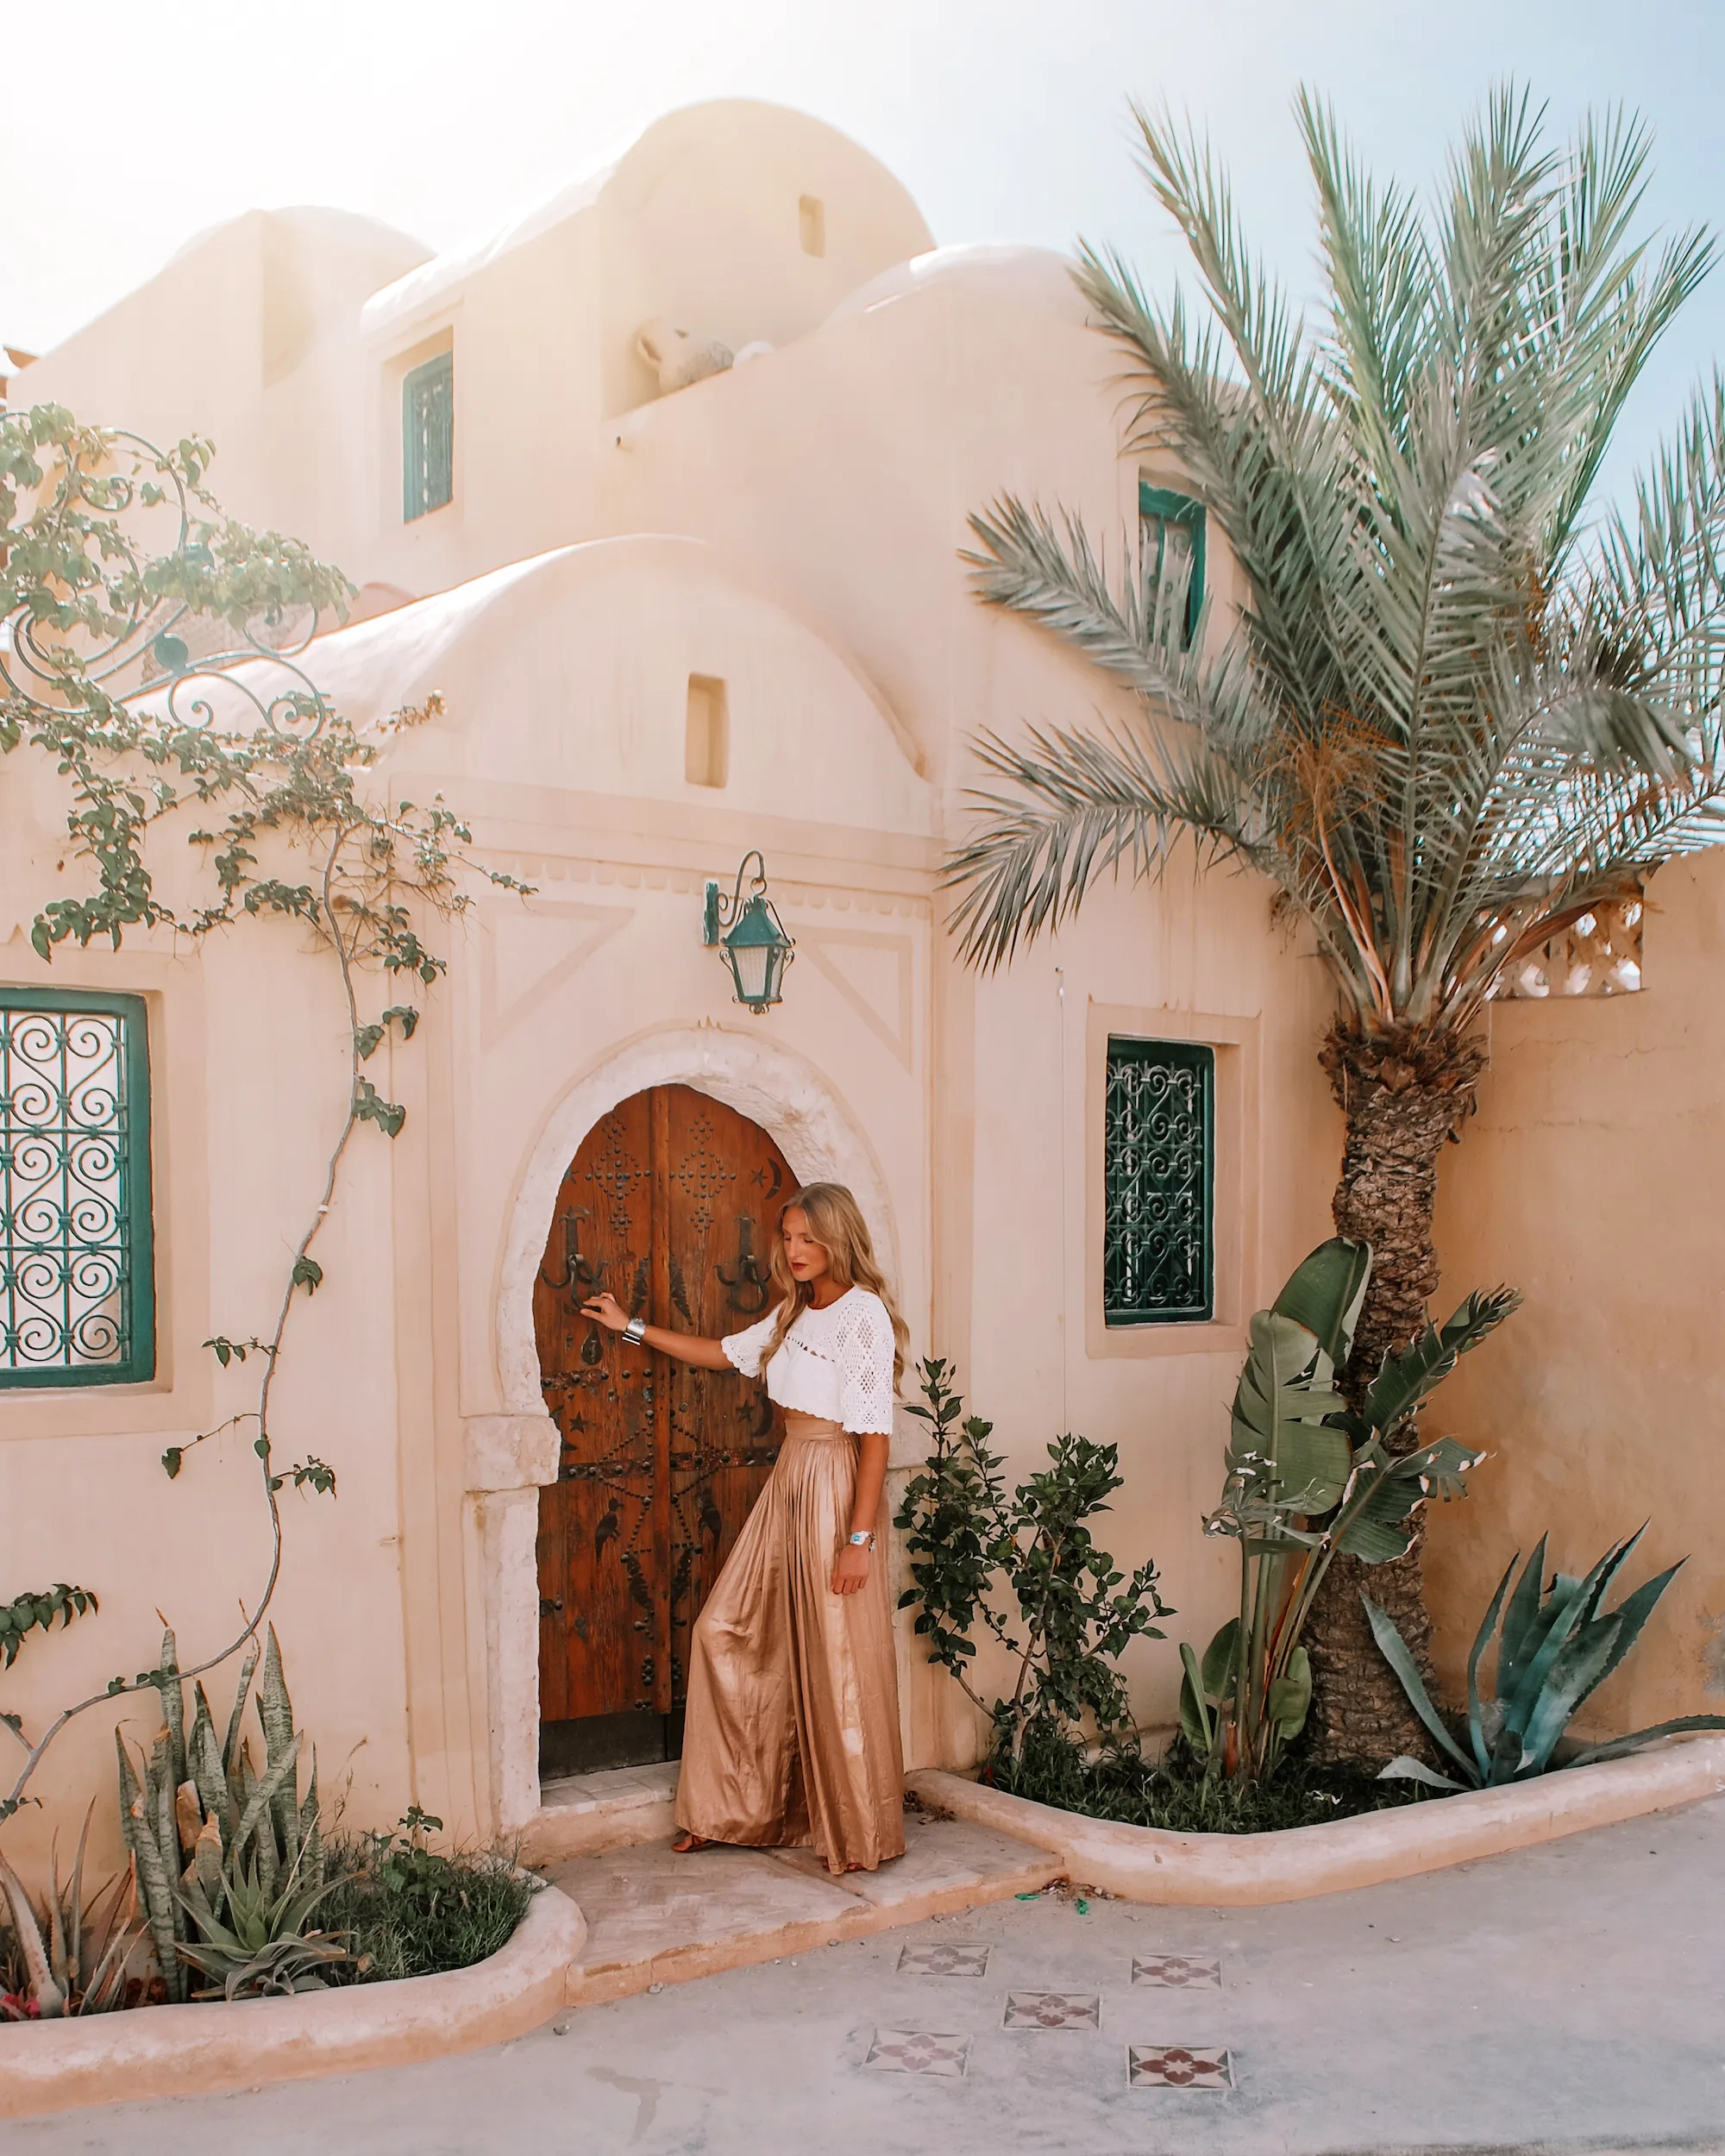 Djerba - 15 Stunning Places in Tunisia